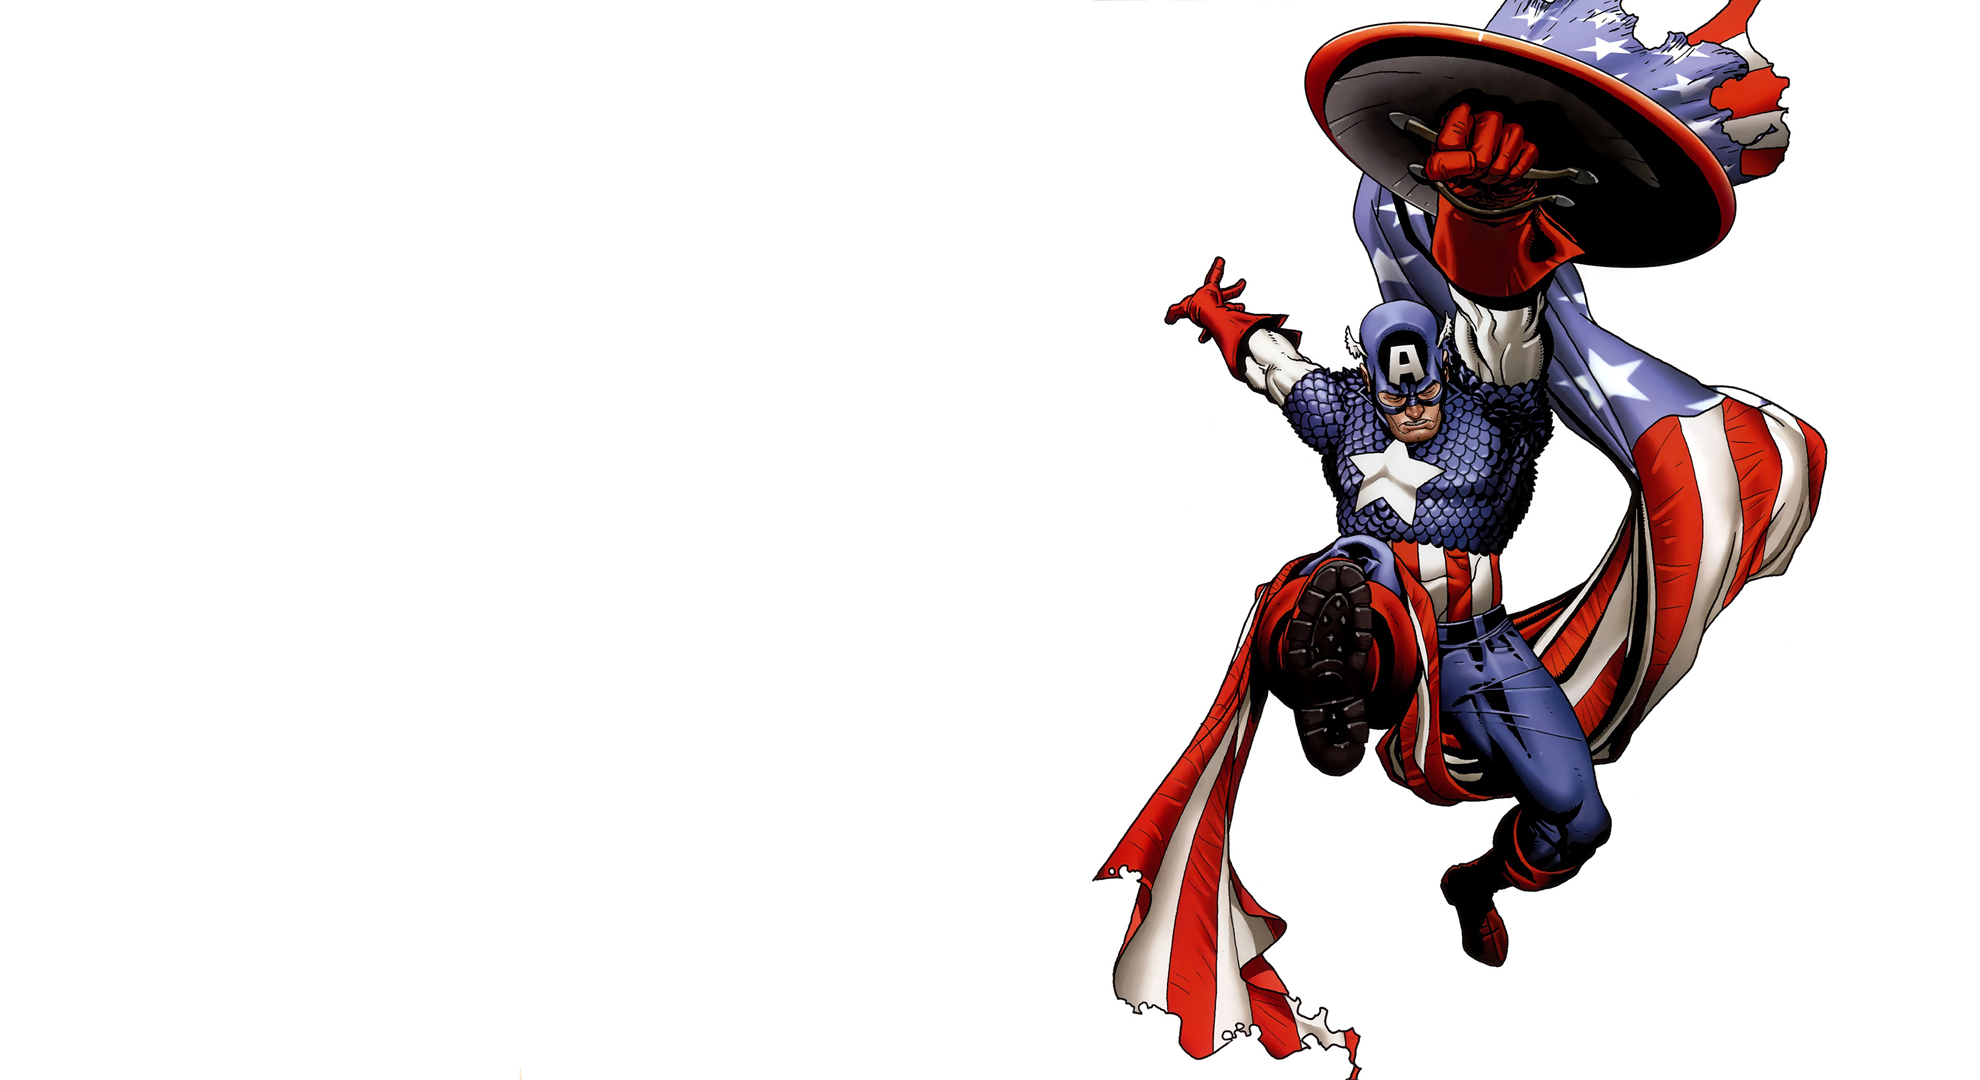 Bakgrundsbilder Superhjältar Captain America superhjälte Fantasy